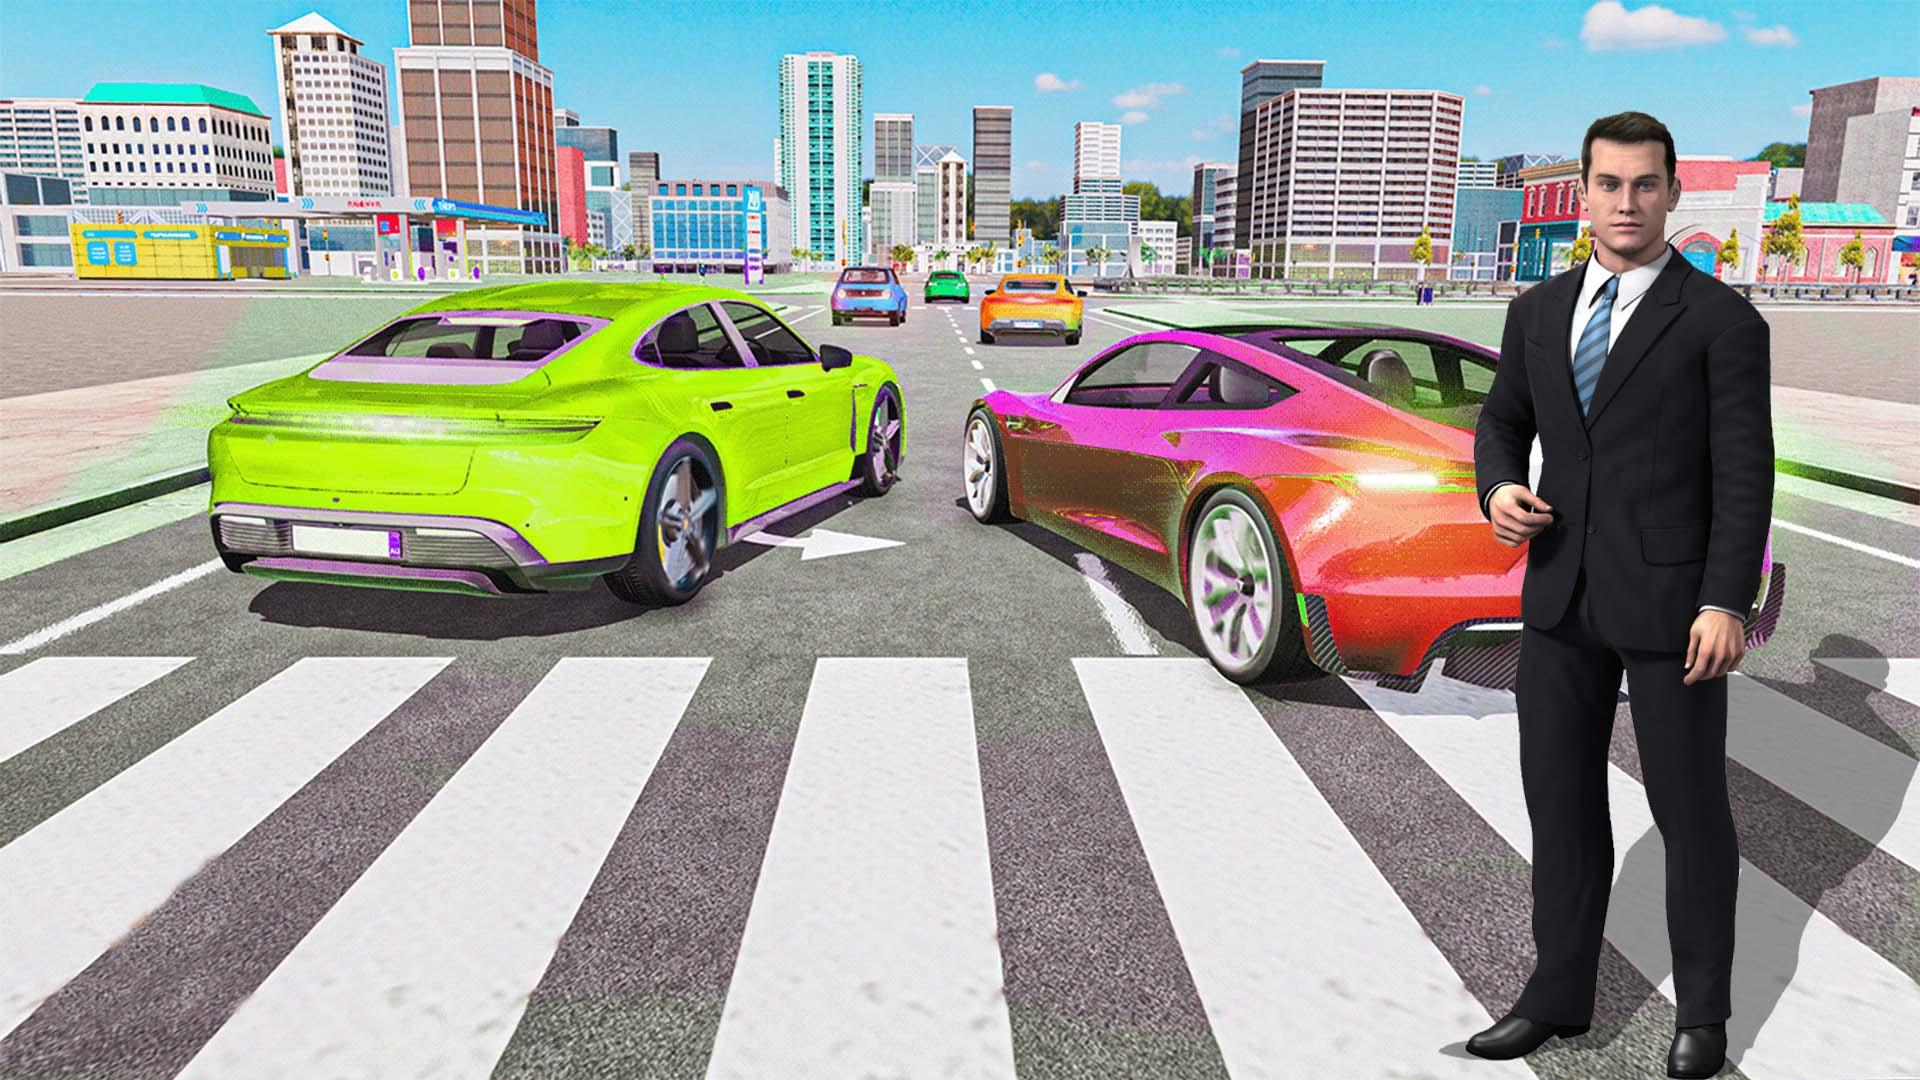 Car Saler: Car Dealer Simultor screenshot game